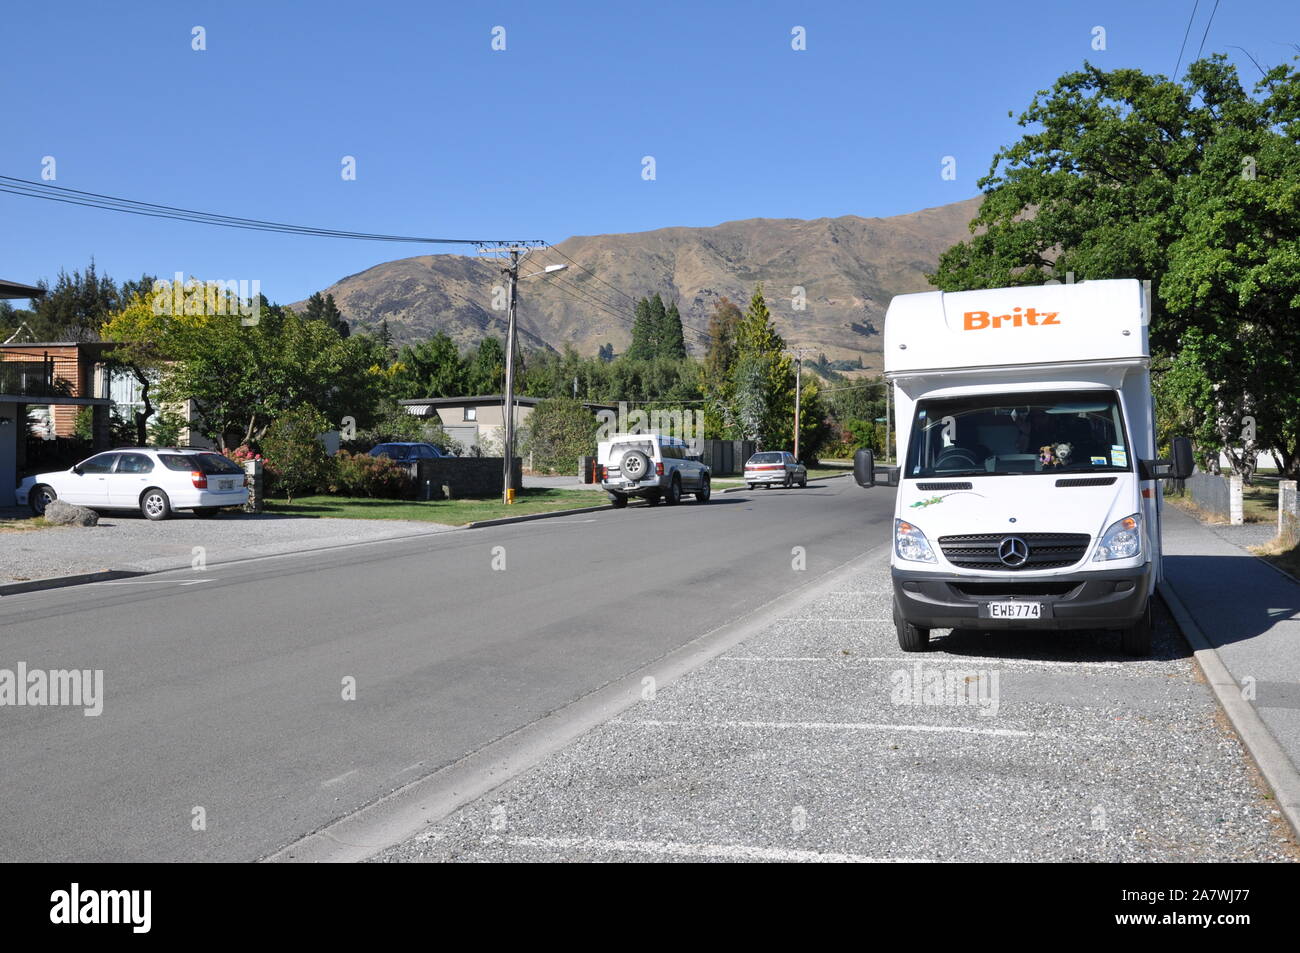 Britz camper, camper, camper, camper per per camper, parcheggiati per la notte nella zona residenziale di Wanaka, Otago, nuova Zelanda. Parcheggio in strada Foto Stock